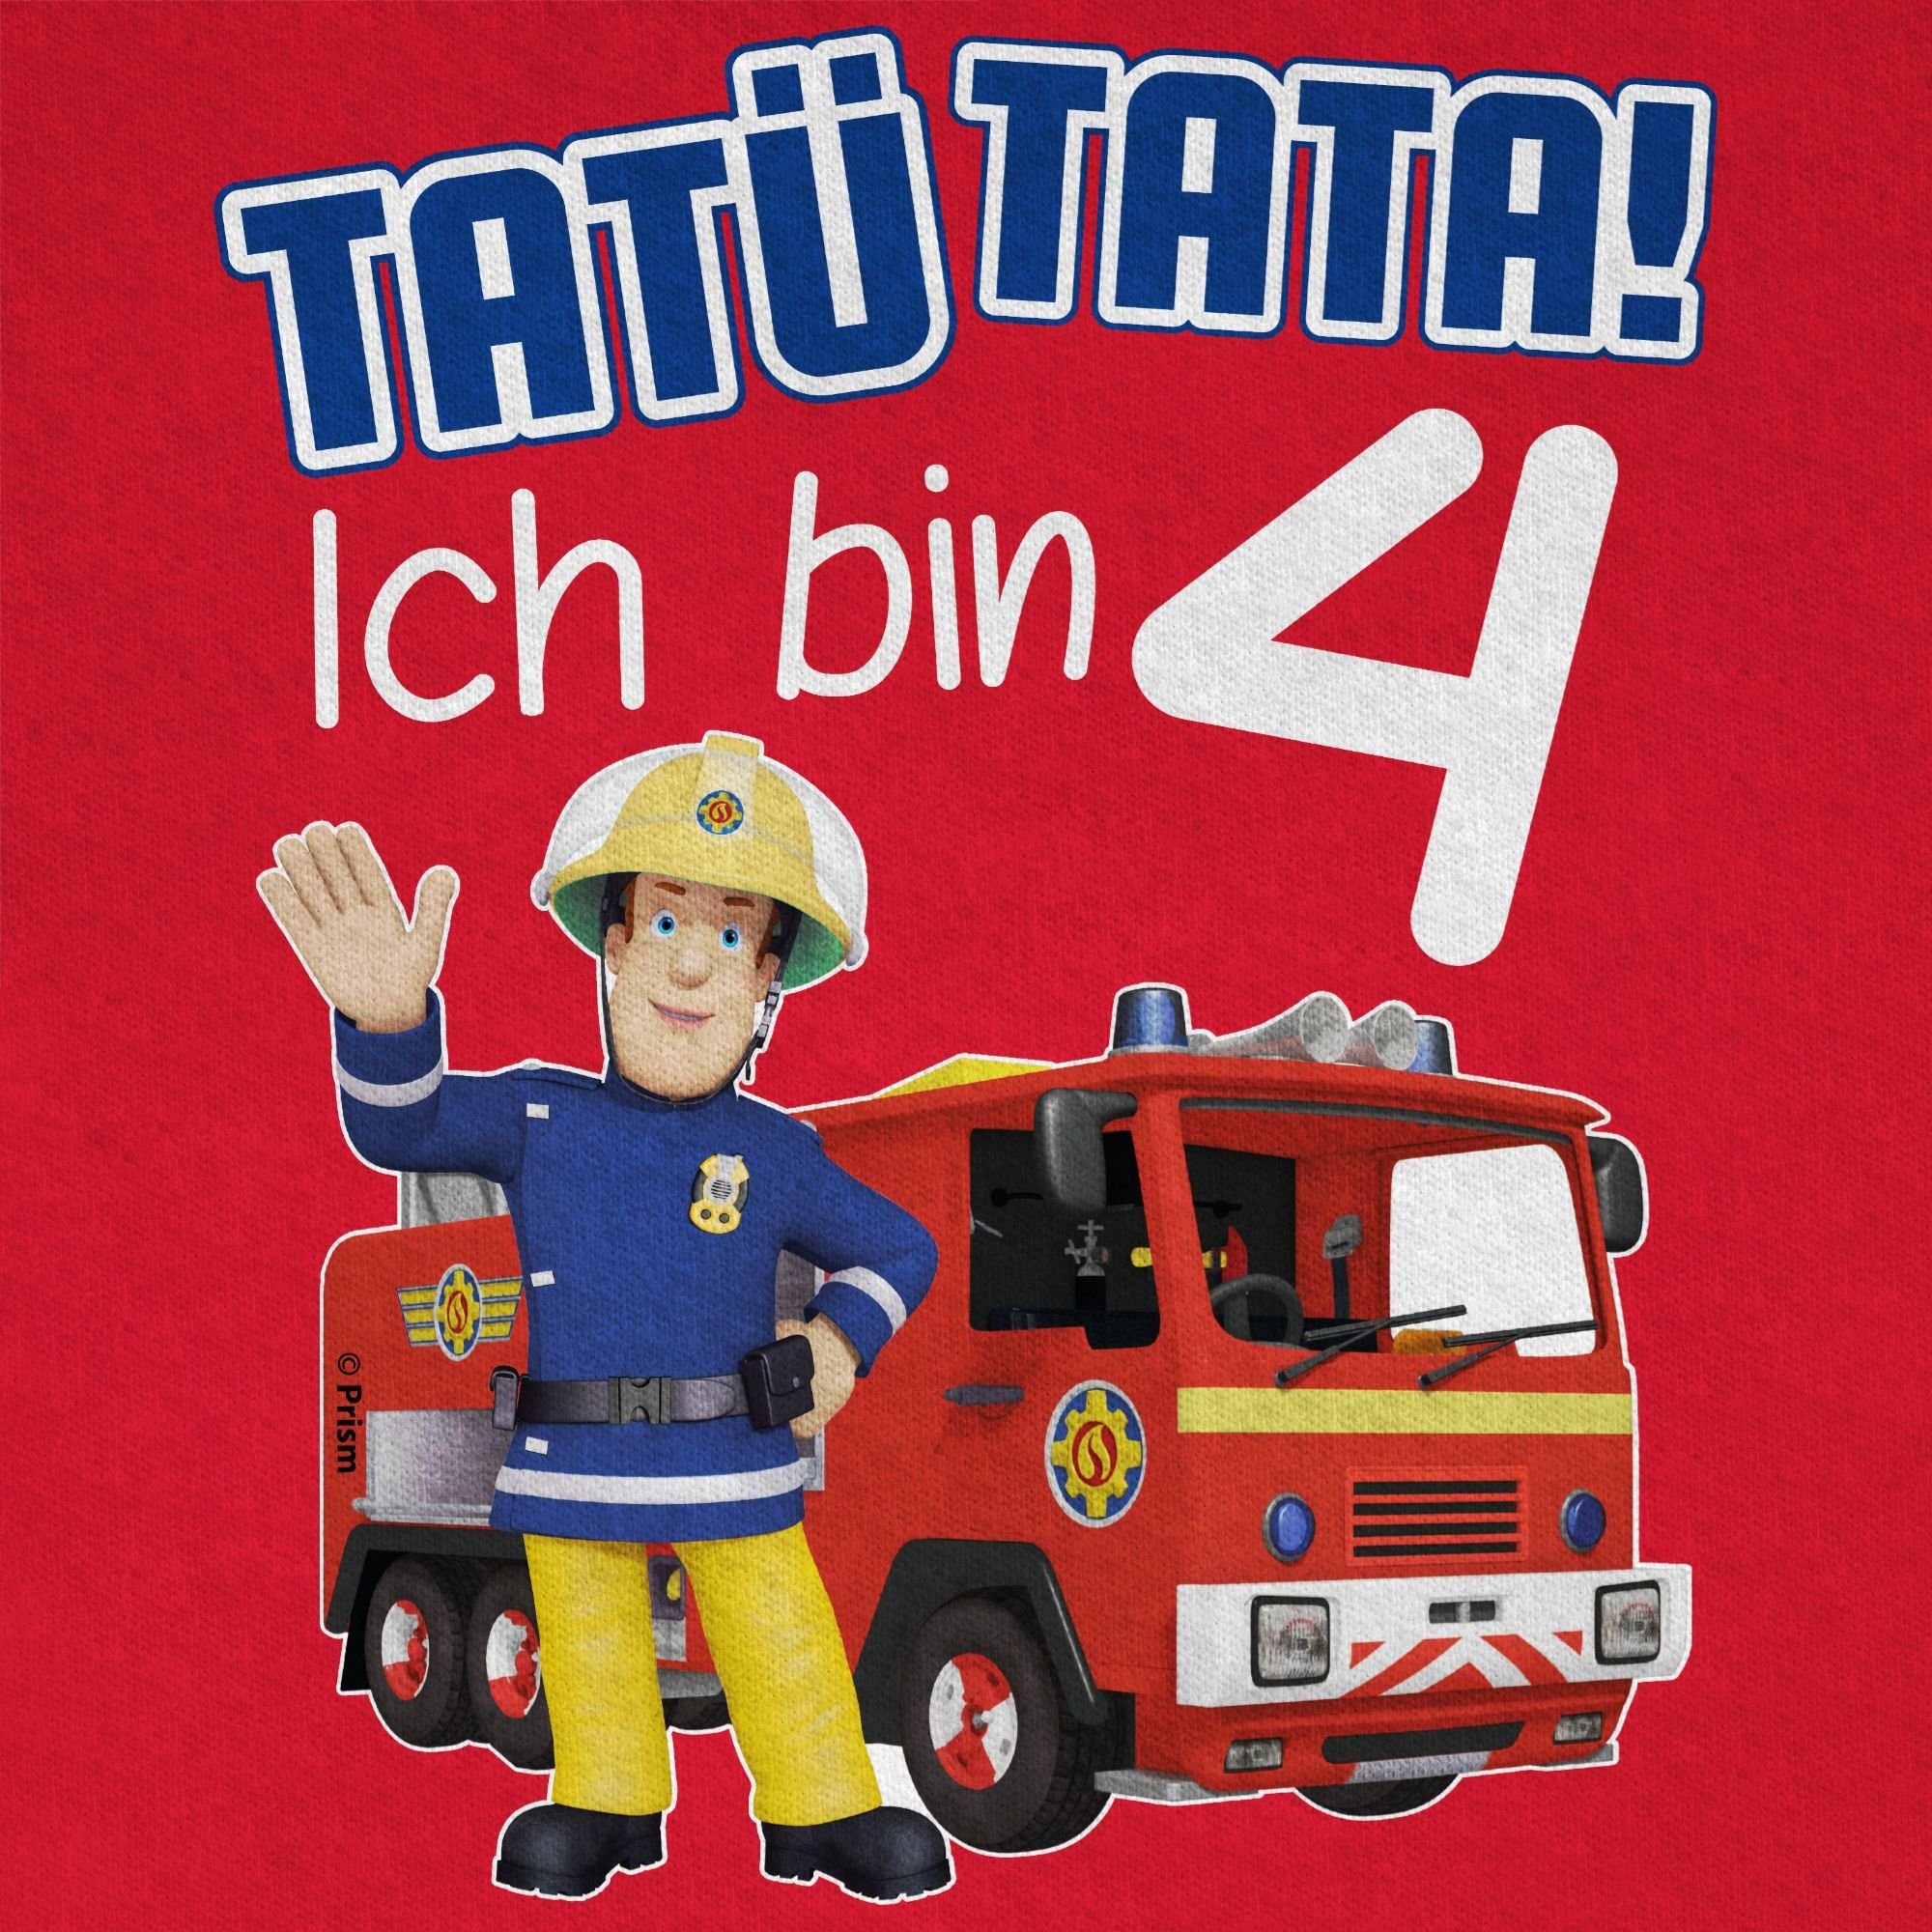 01 Feuerwehrmann 4 Geburtstag Tatü Sam Shirtracer Jungen Tata! Rot Ich T-Shirt bin